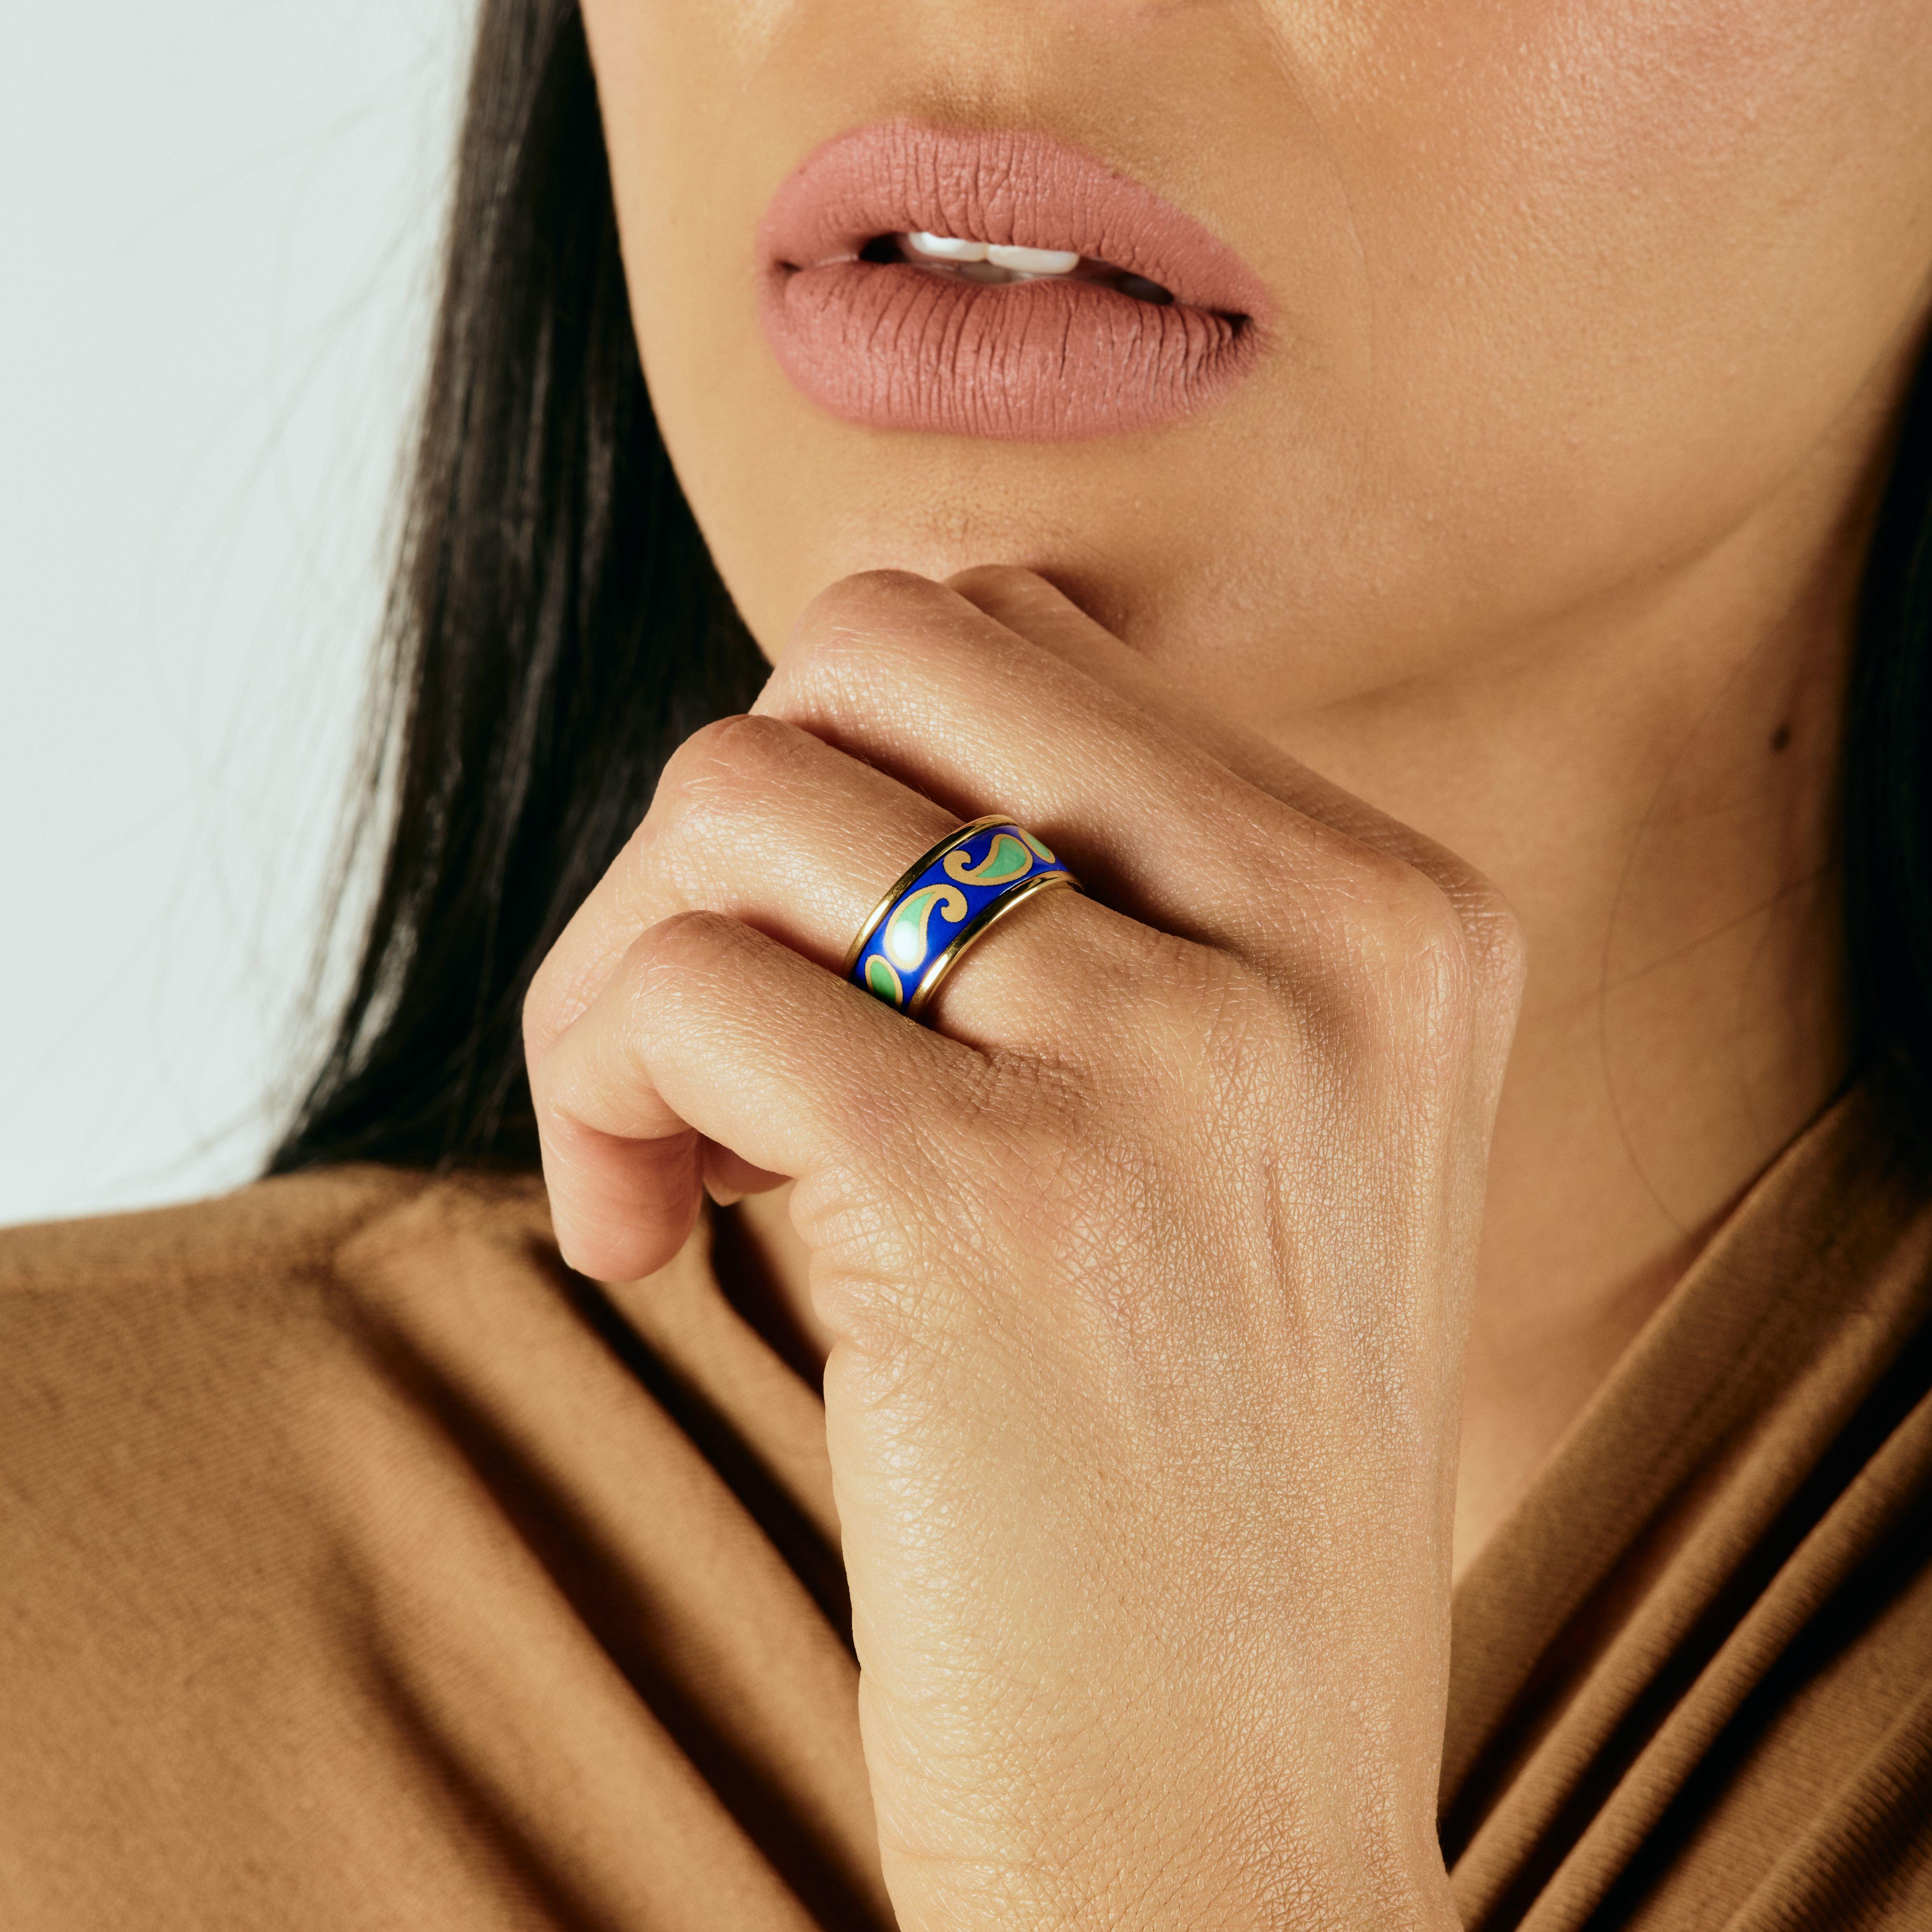 Wir stellen den Eternity Ring vor. Erleben Sie puren Luxus mit unseren Ringen aus 18k vergoldetem Edelstahl. Diese exquisiten Ringe, die von Hand mit fesselnder Feueremaille bemalt sind, sollen ein Statement setzen. Sie sind hypoallergen und